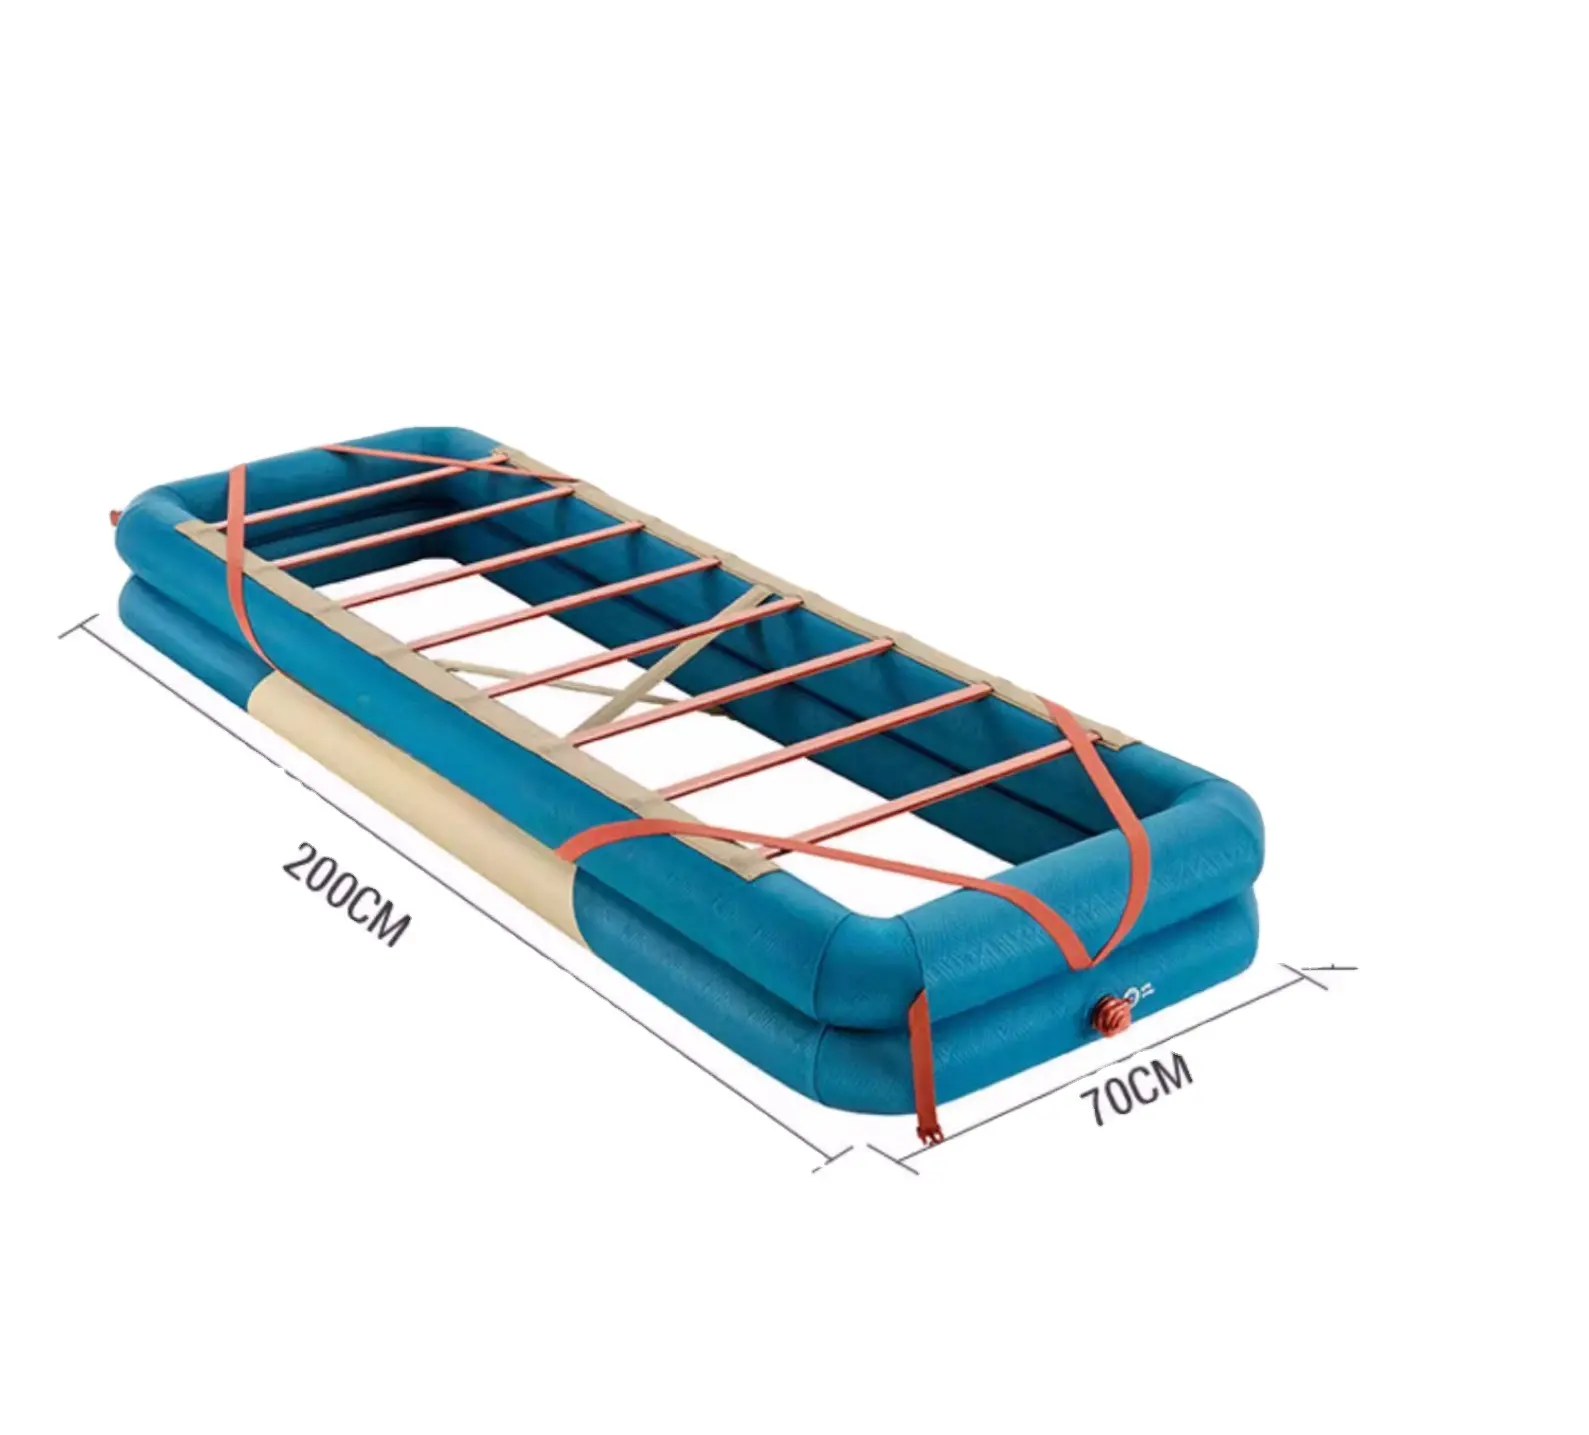 Marco de cama inflable Camping de alta calidad Sleep Single 70cm Cómodo y fácil de almacenar